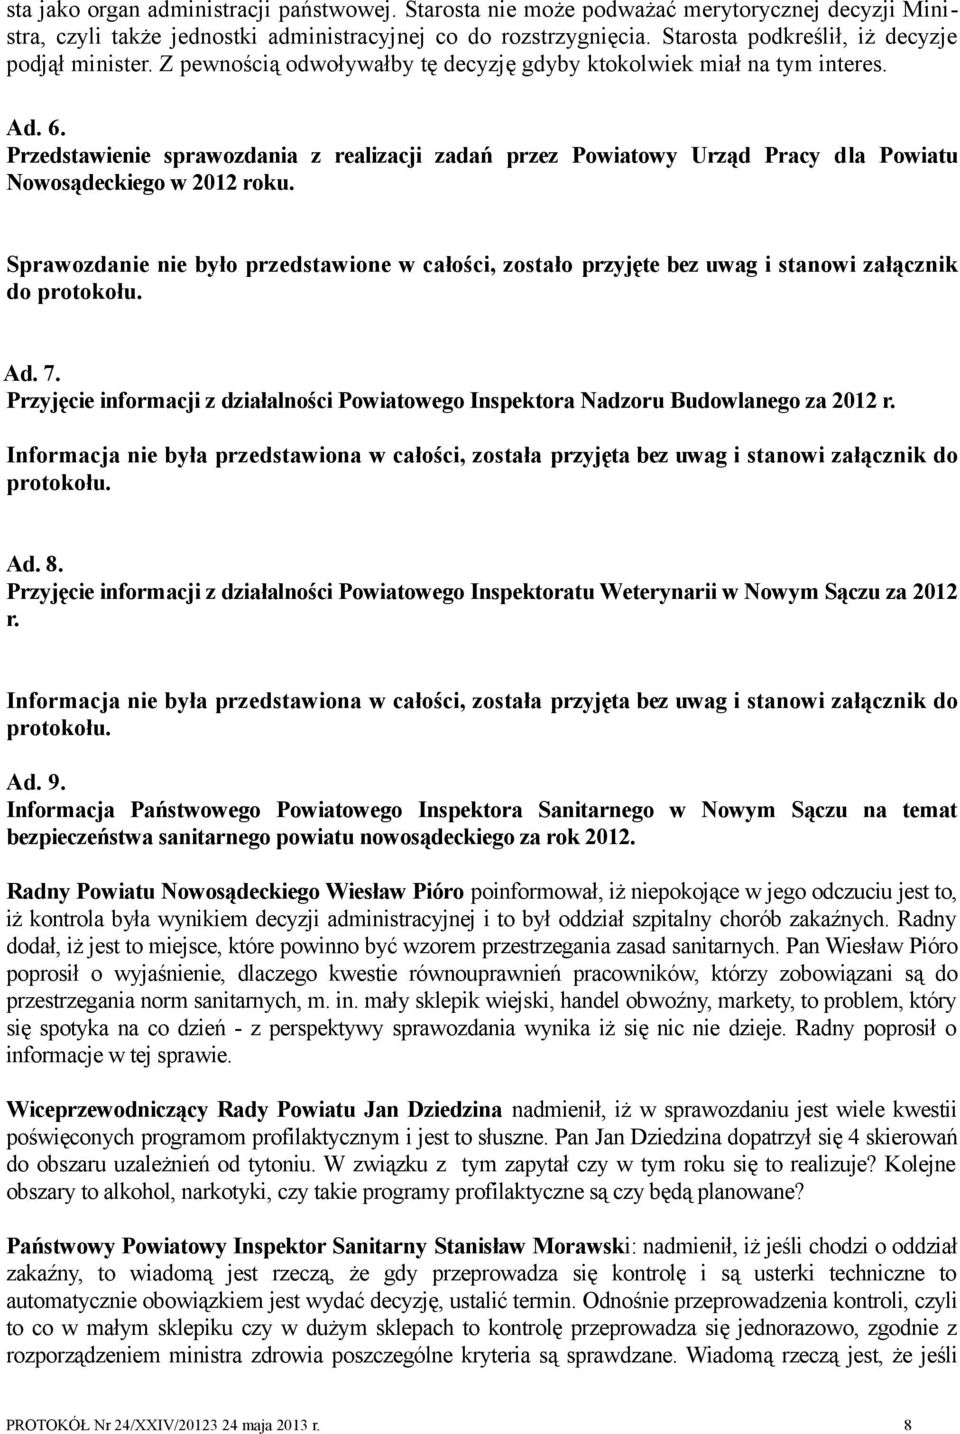 Przedstawienie sprawozdania z realizacji zadań przez Powiatowy Urząd Pracy dla Powiatu Nowosądeckiego w 2012 roku.